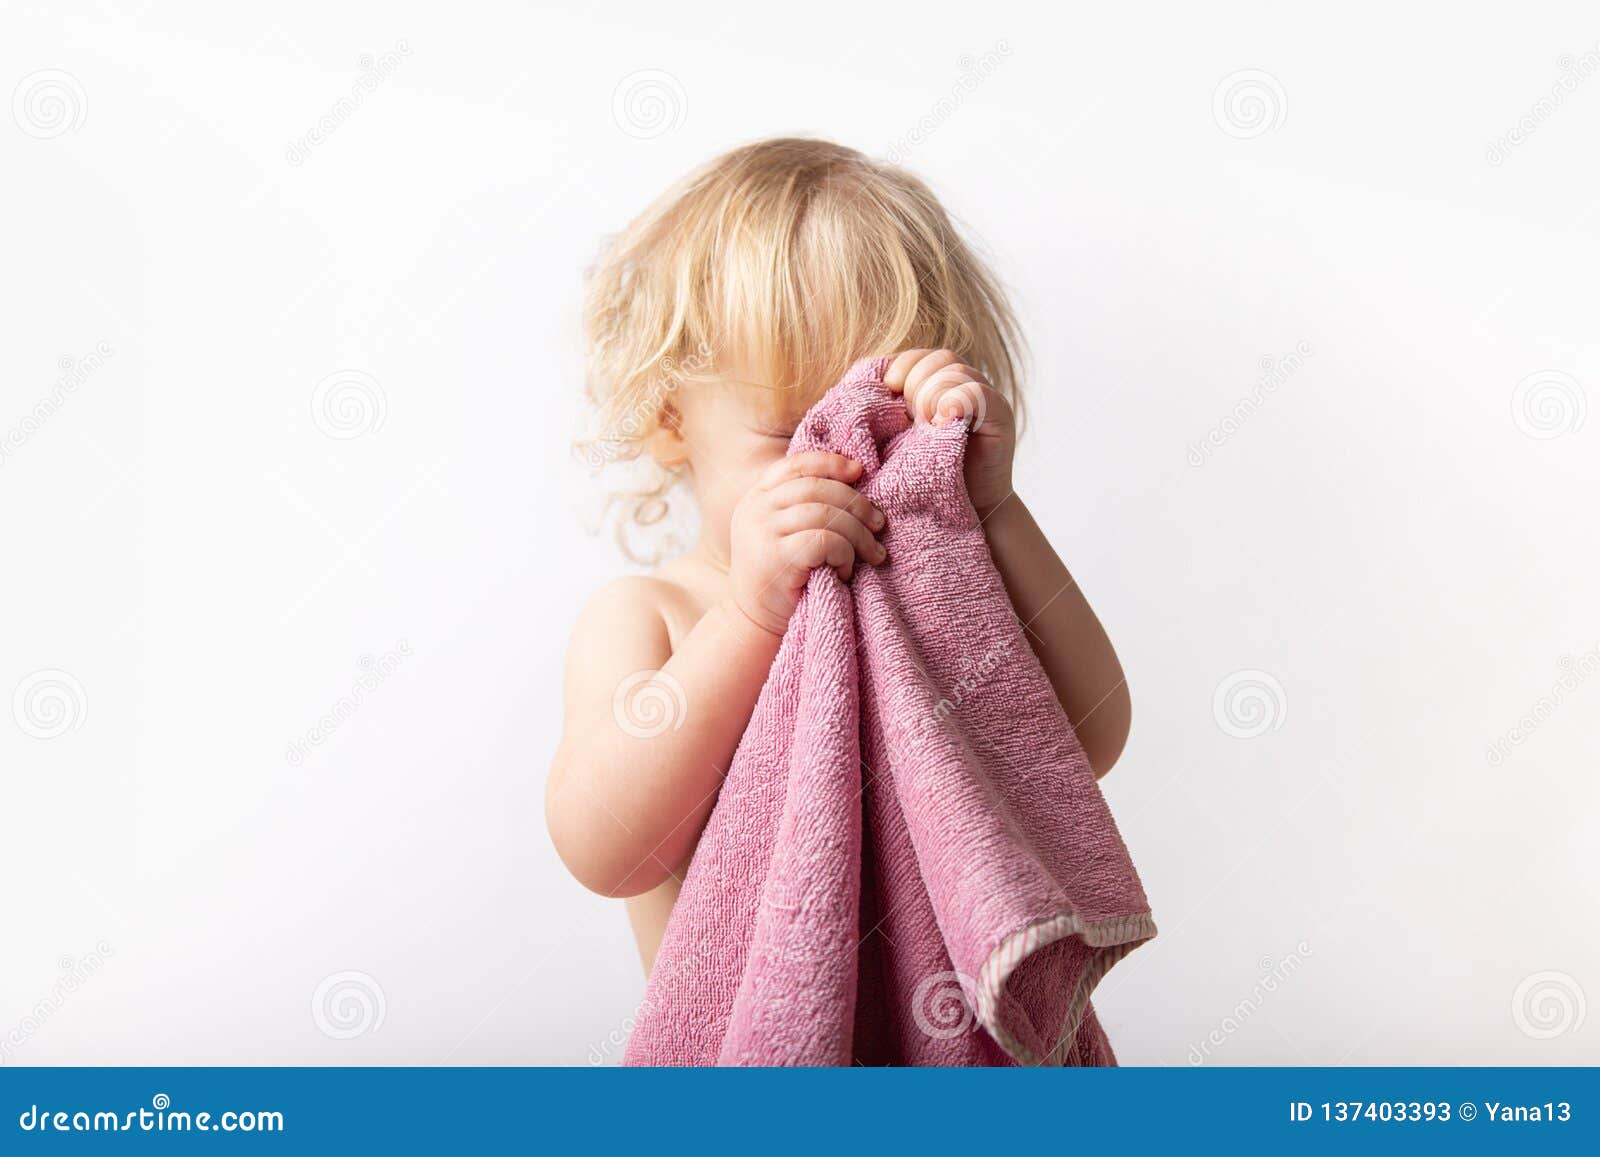 Чужим полотенцем. Вытираться полотенцем. Дети вытирают руки. Детки вытираются полотенцем. Девочка вытирает лицо полотенцем.